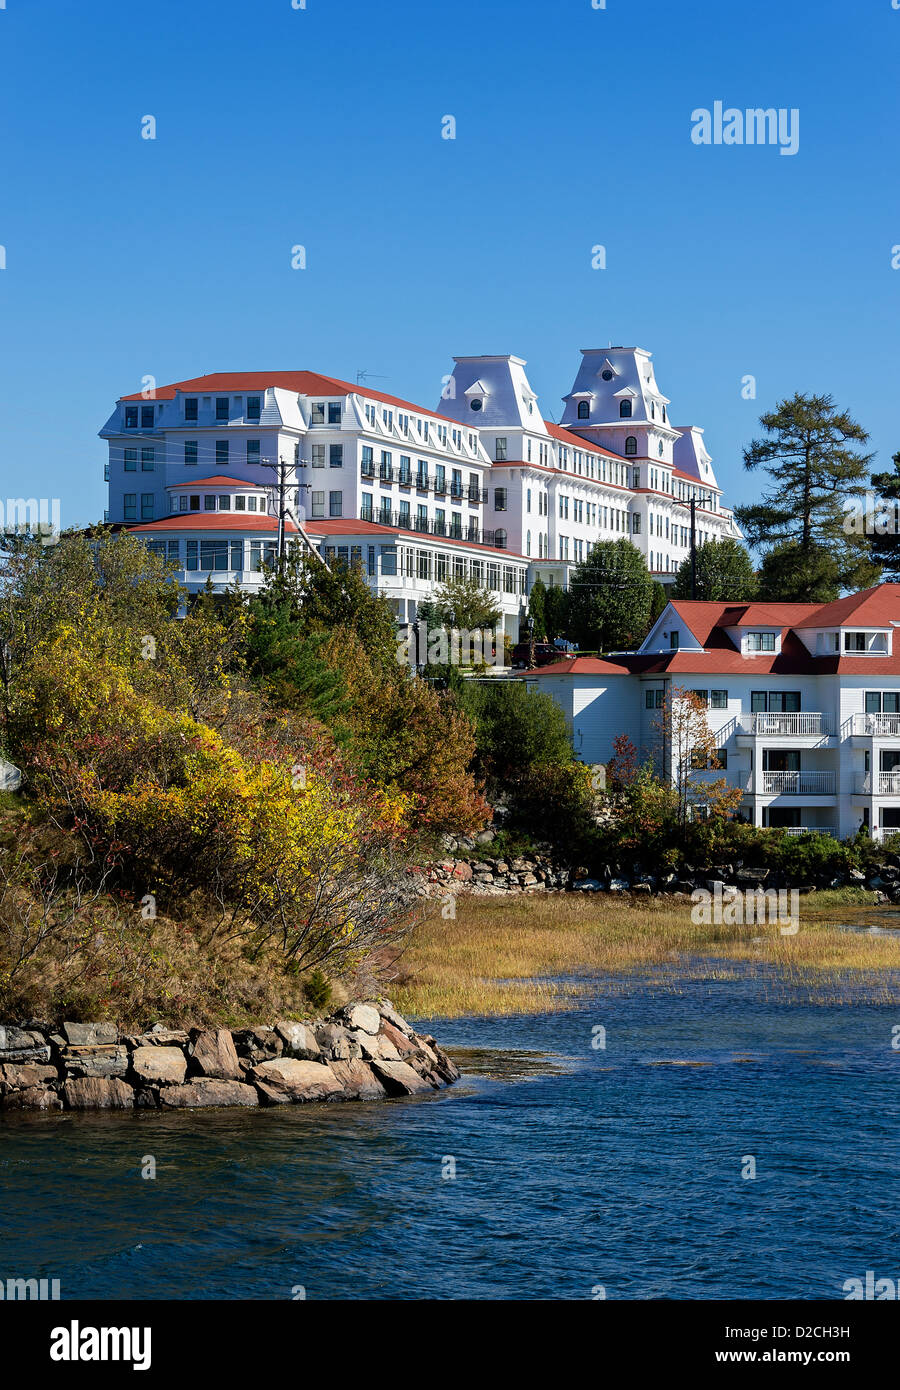 Die Wentworth am Meer (vormals The Hotel Wentworth), historischen Grandhotel in New Castle, New Hampshire, USA Stockfoto